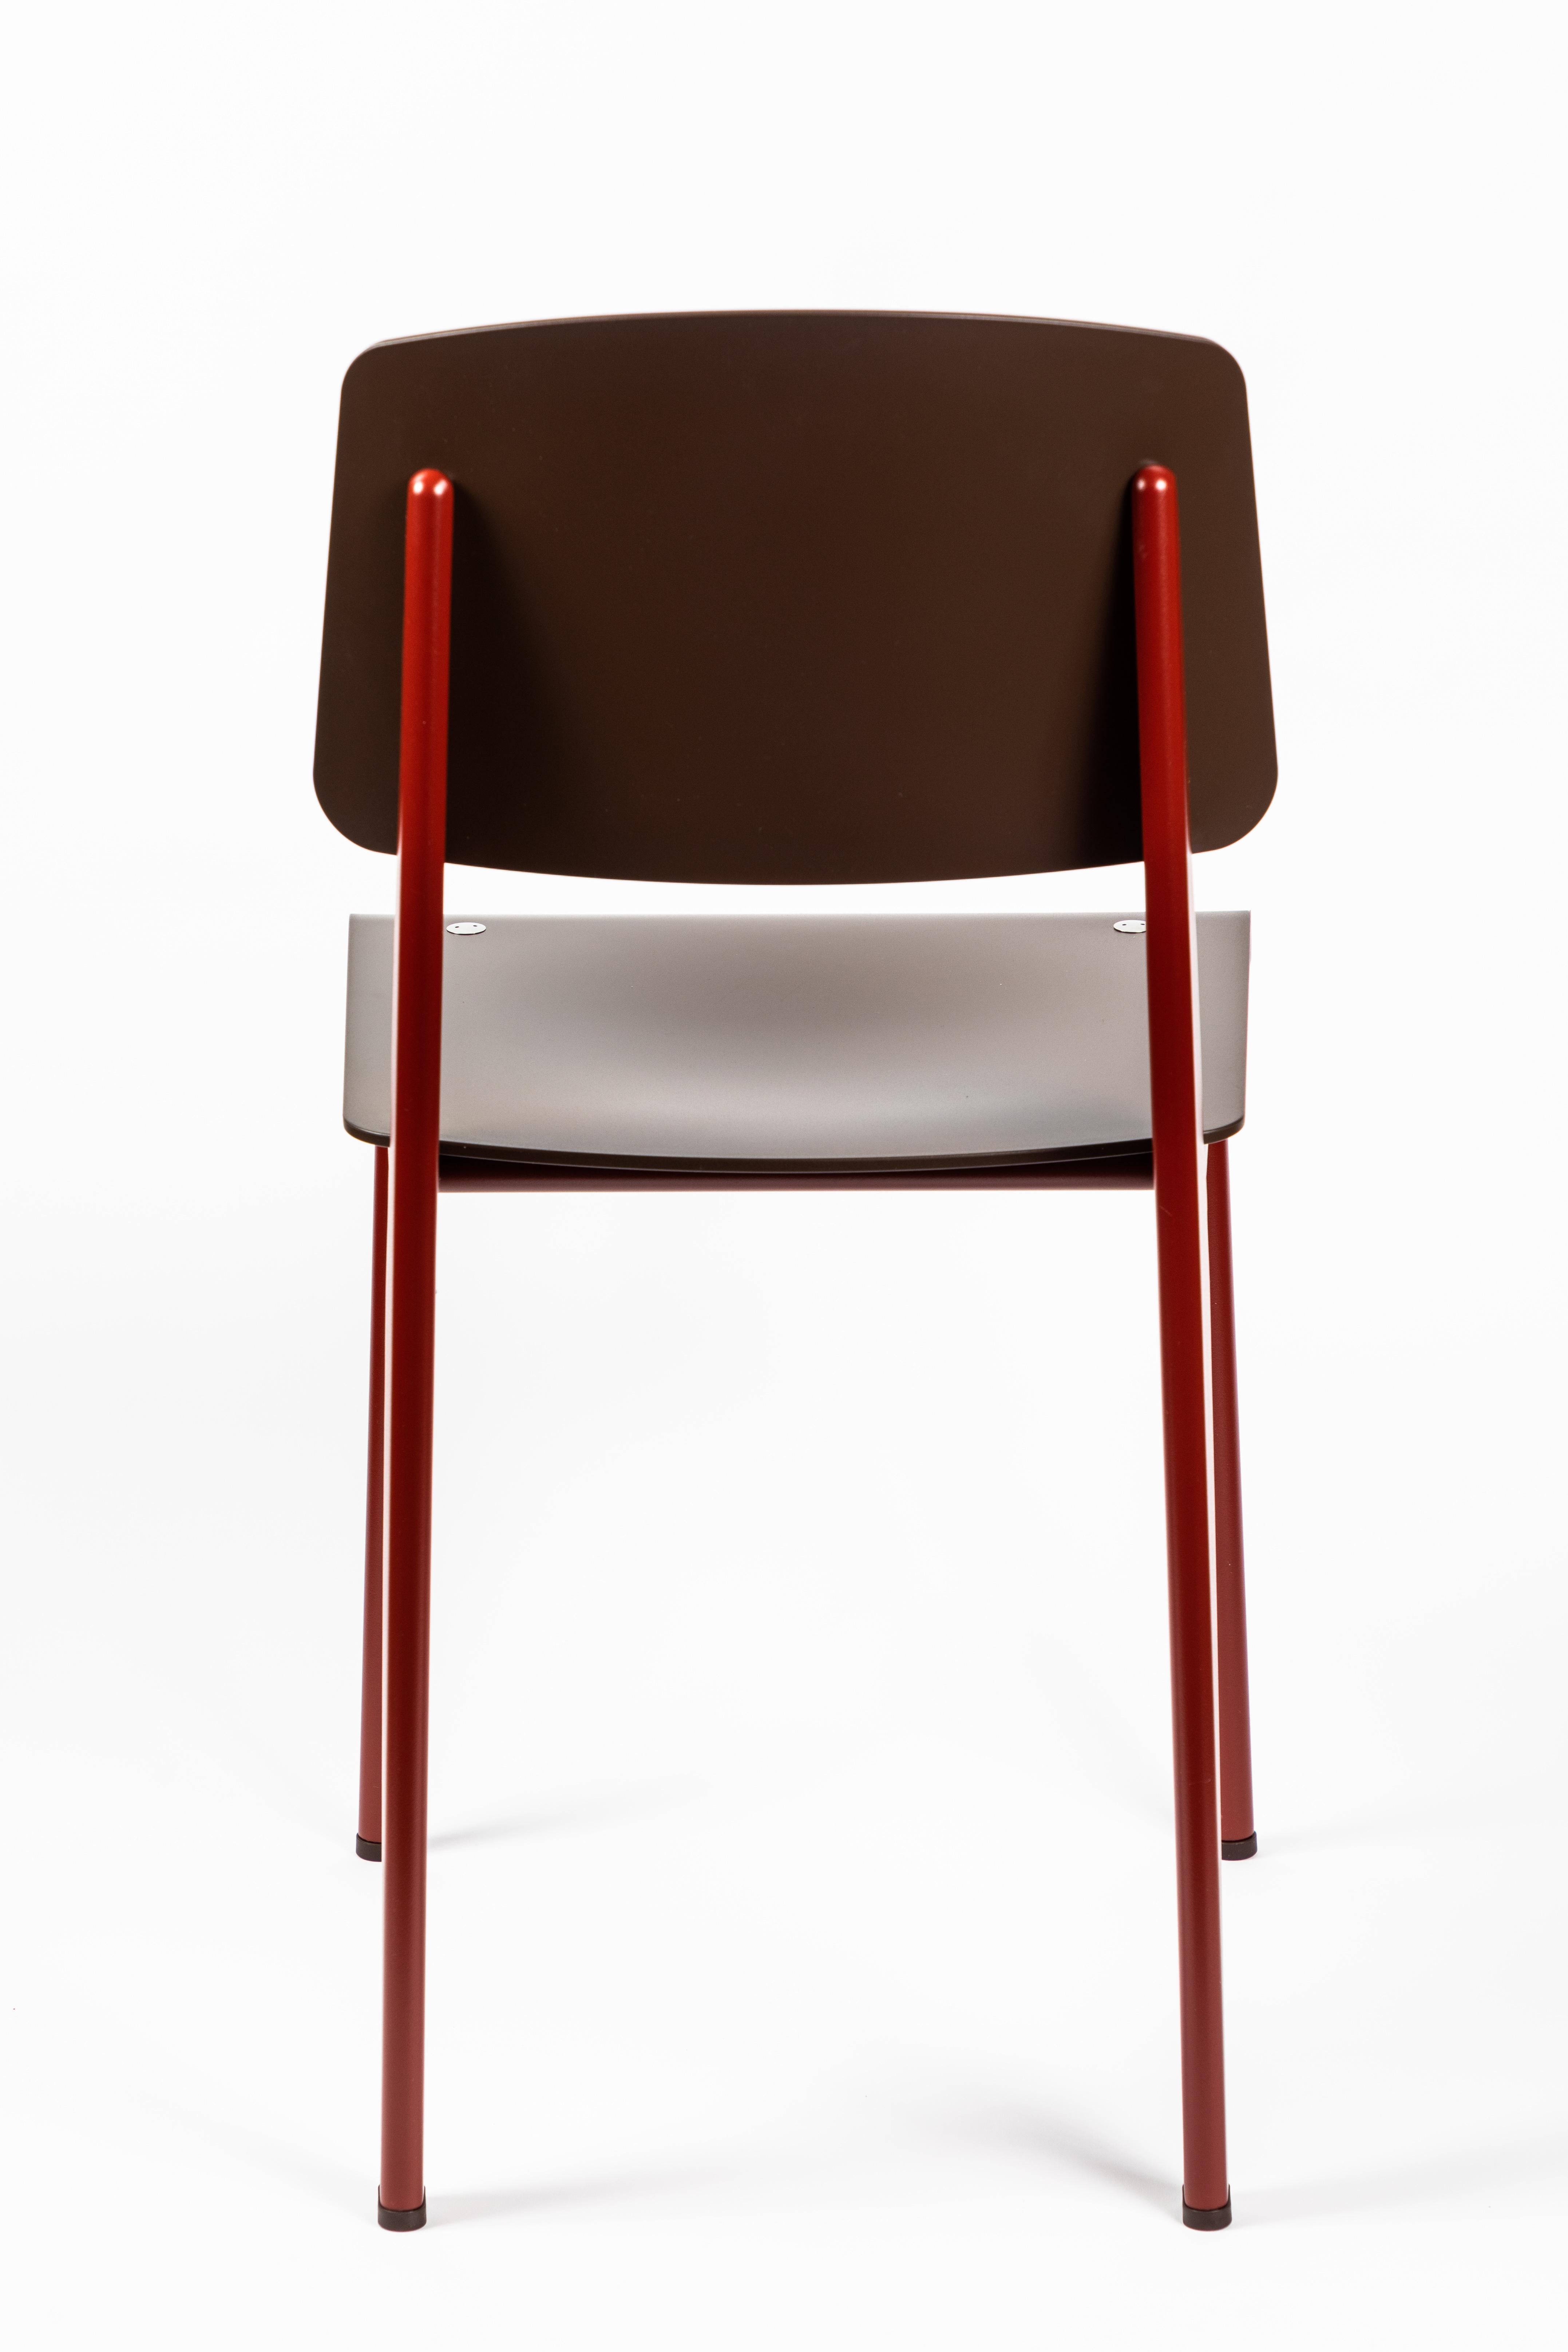 6 Stühle Jean Prouvé Standard SP in Teak Brown und Rot für Vitra (Kunststoff)